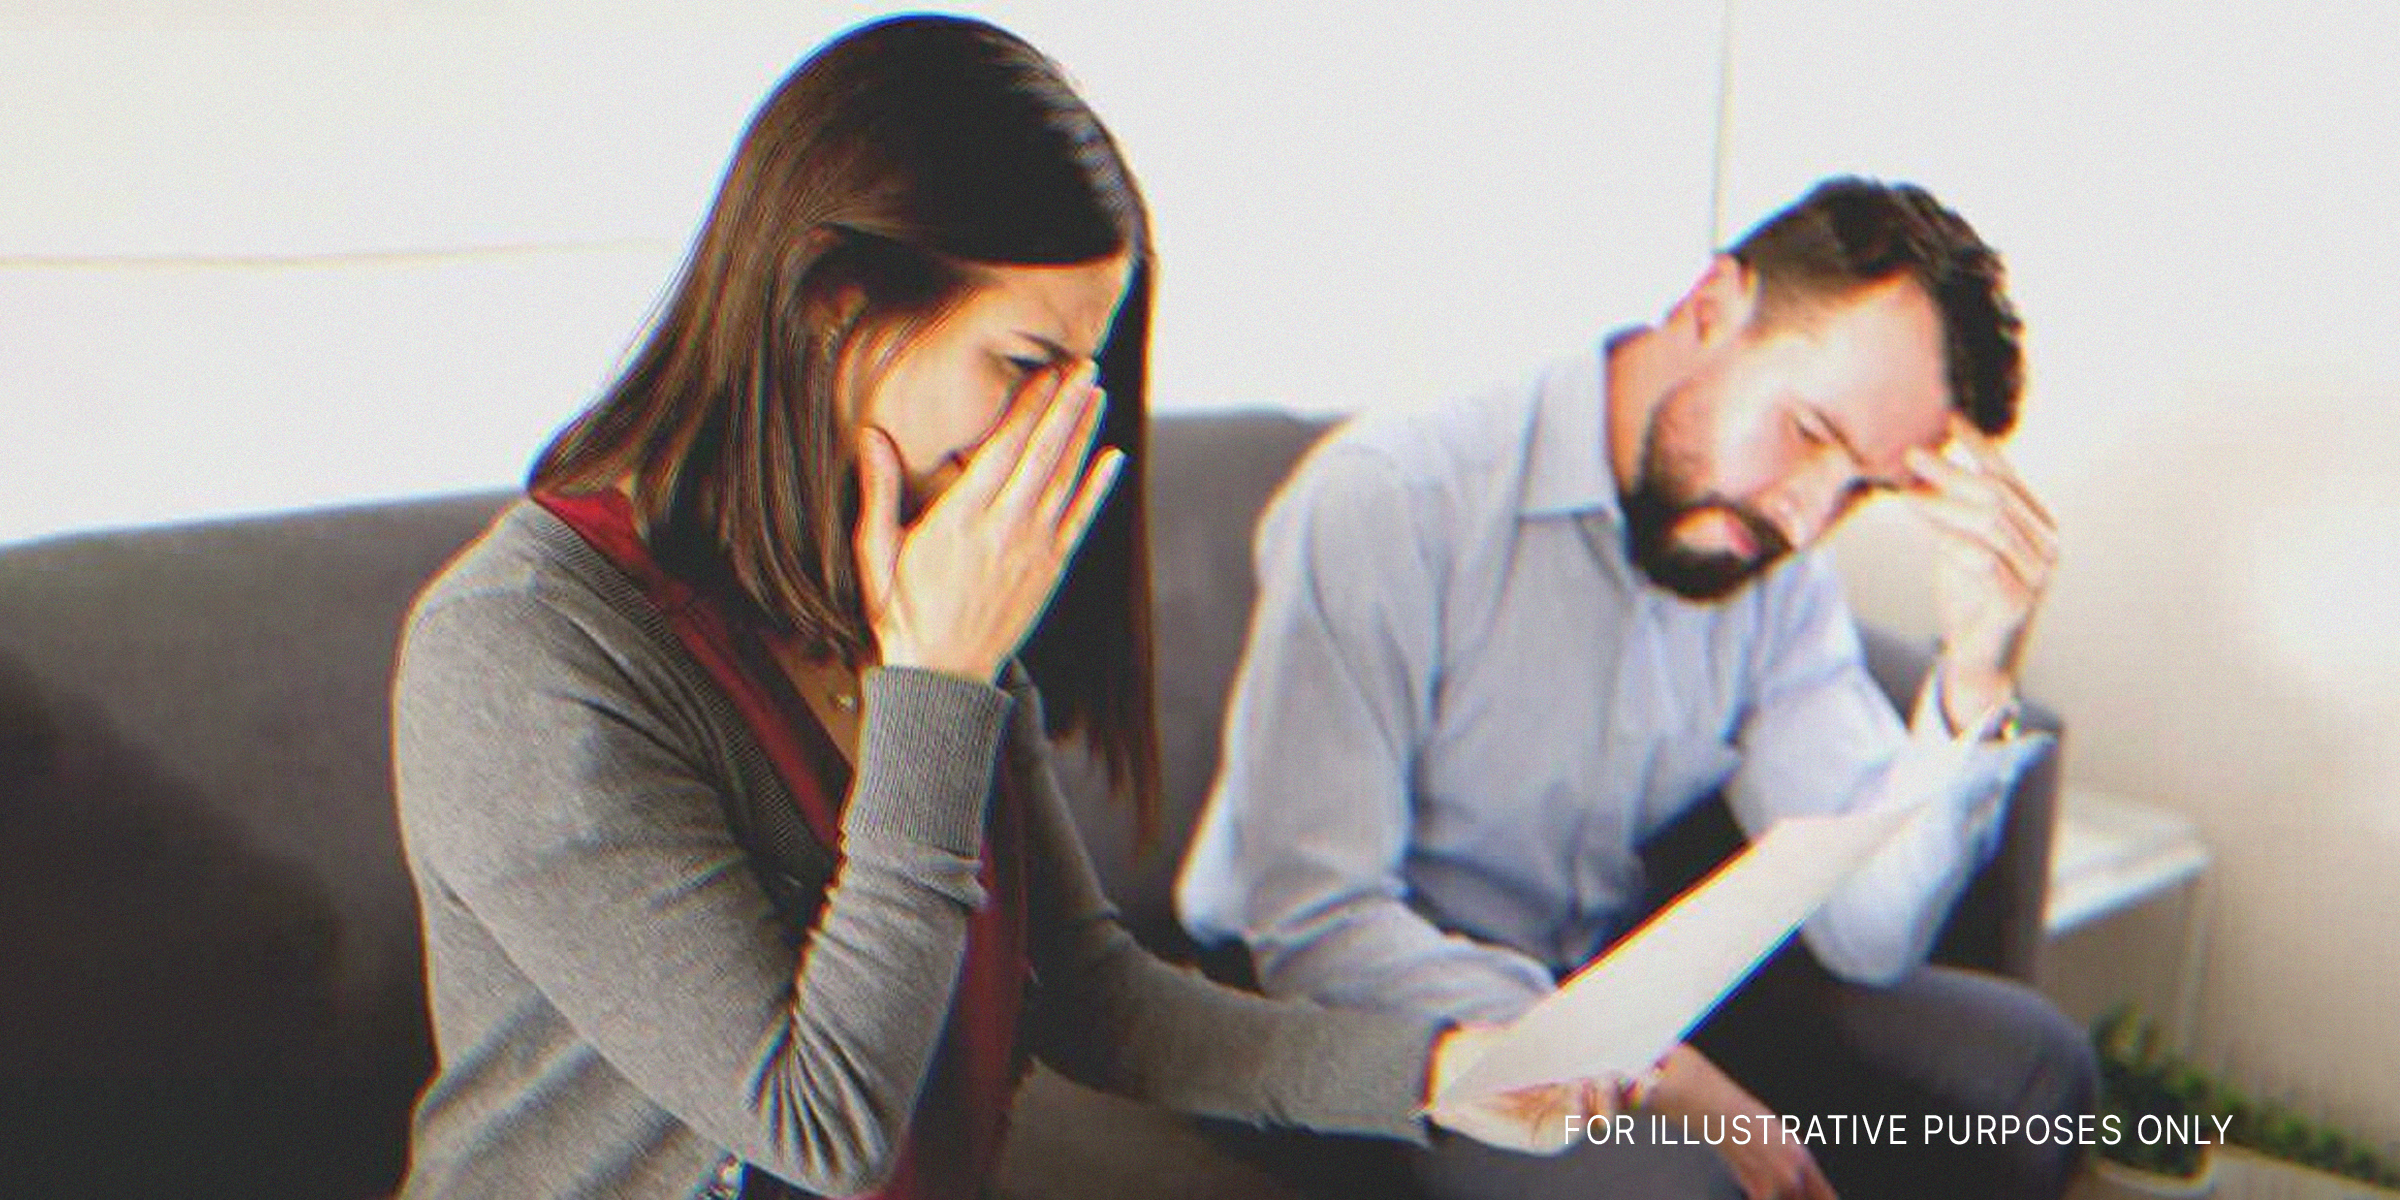 Eine weinende Frau mit einem Stück Papier in der Hand und einem Mann, der neben ihr sitzt | Quelle: Shutterstock